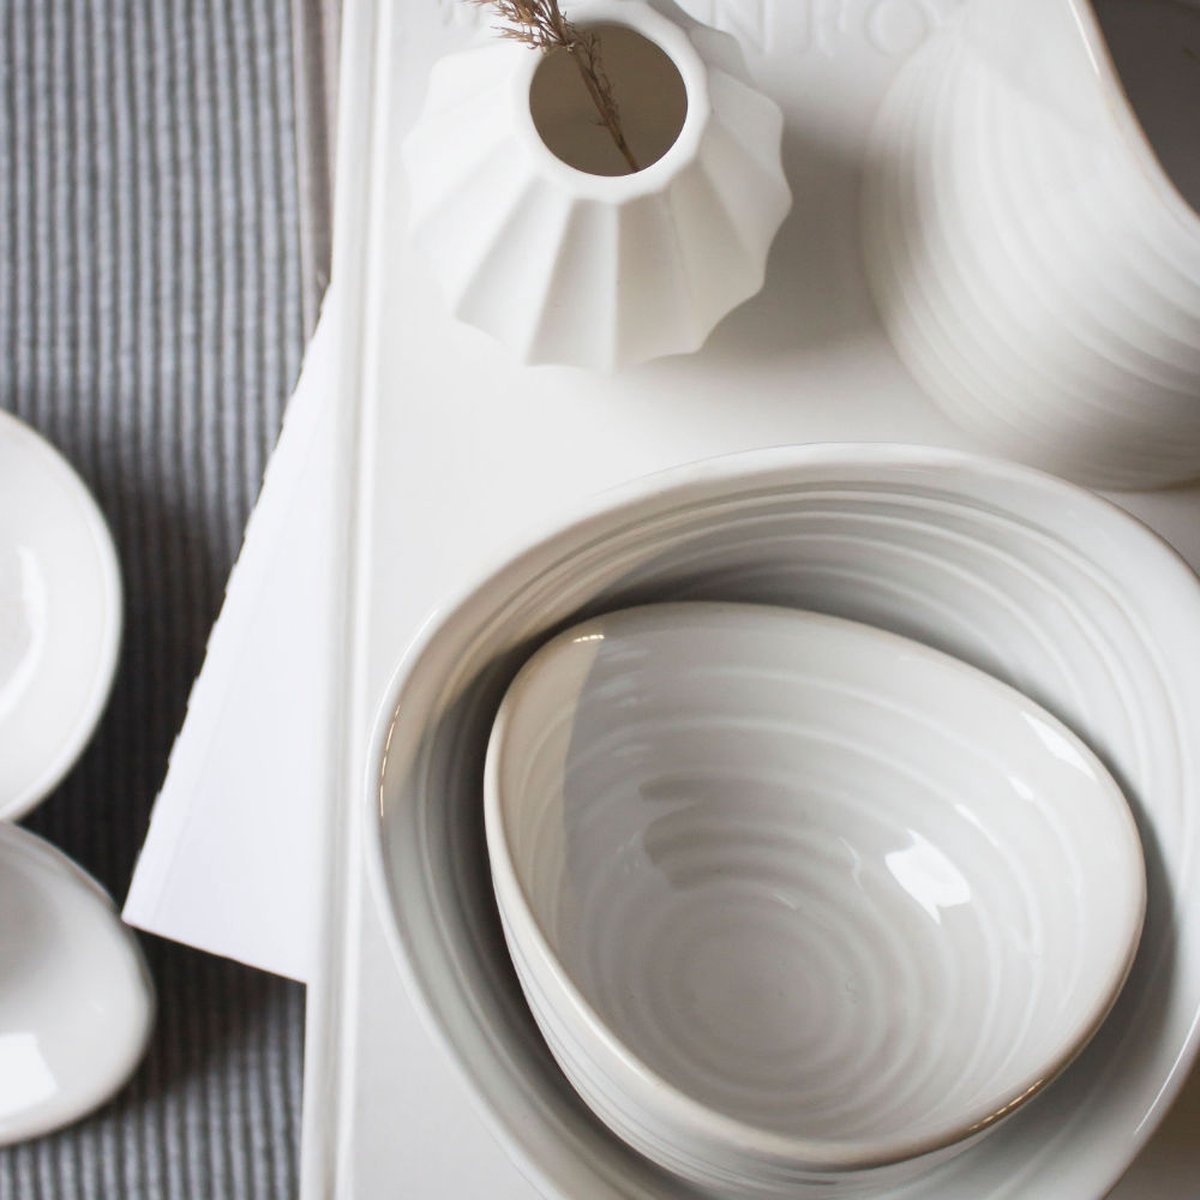 Storefactory Kullen kommetje - steengoed - 15 x 15 x 8 cm - gebroken wit / off-white